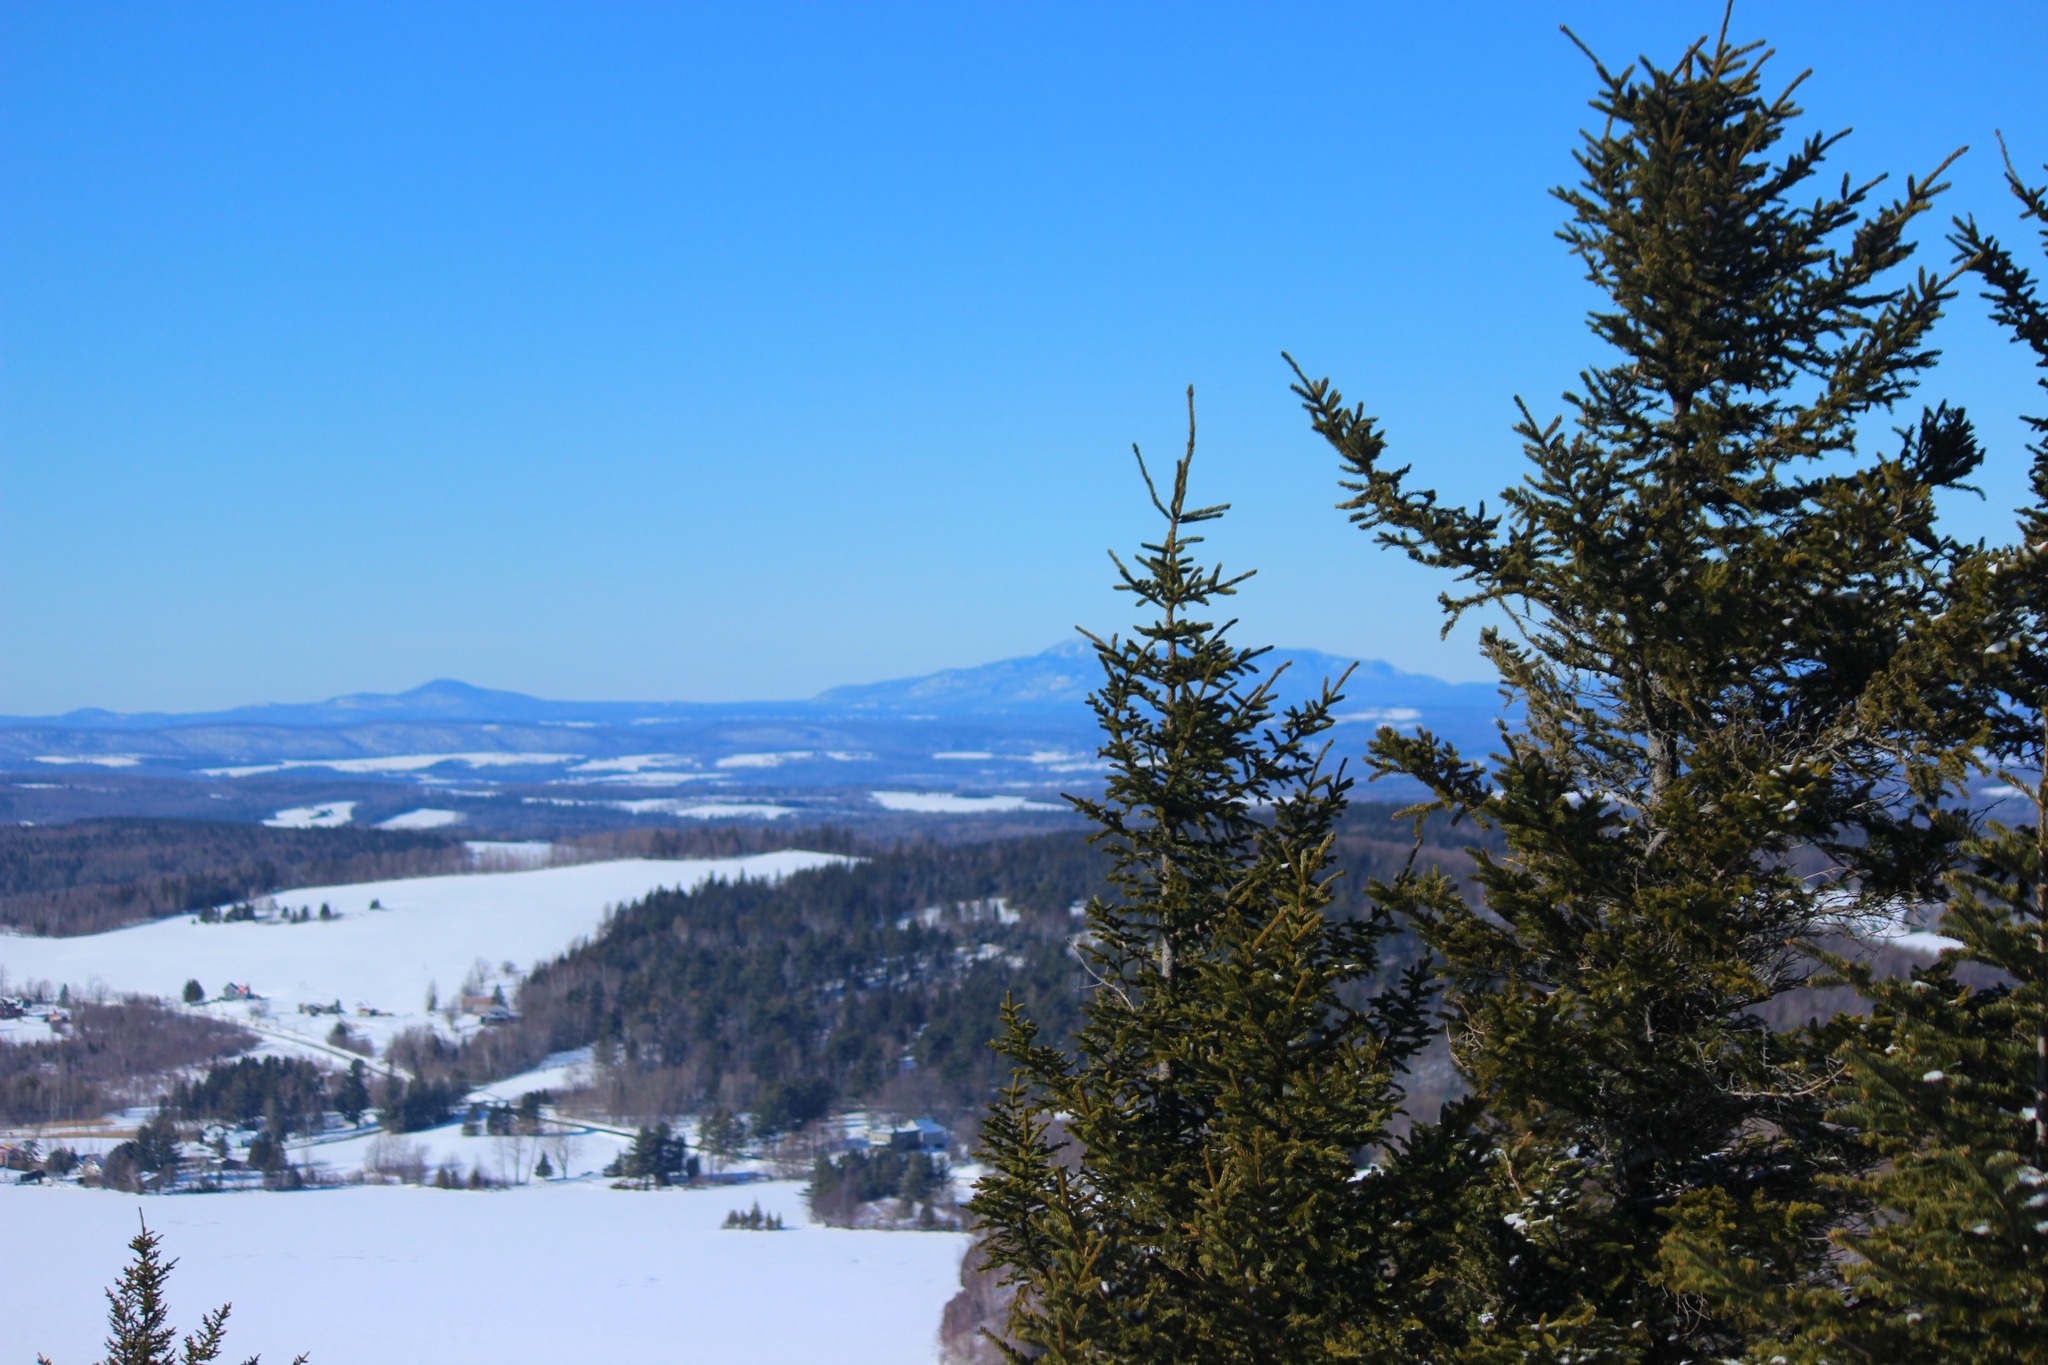 Pinnacle Mountain está abrindo suas trilhas no inverno pelo segundo ano